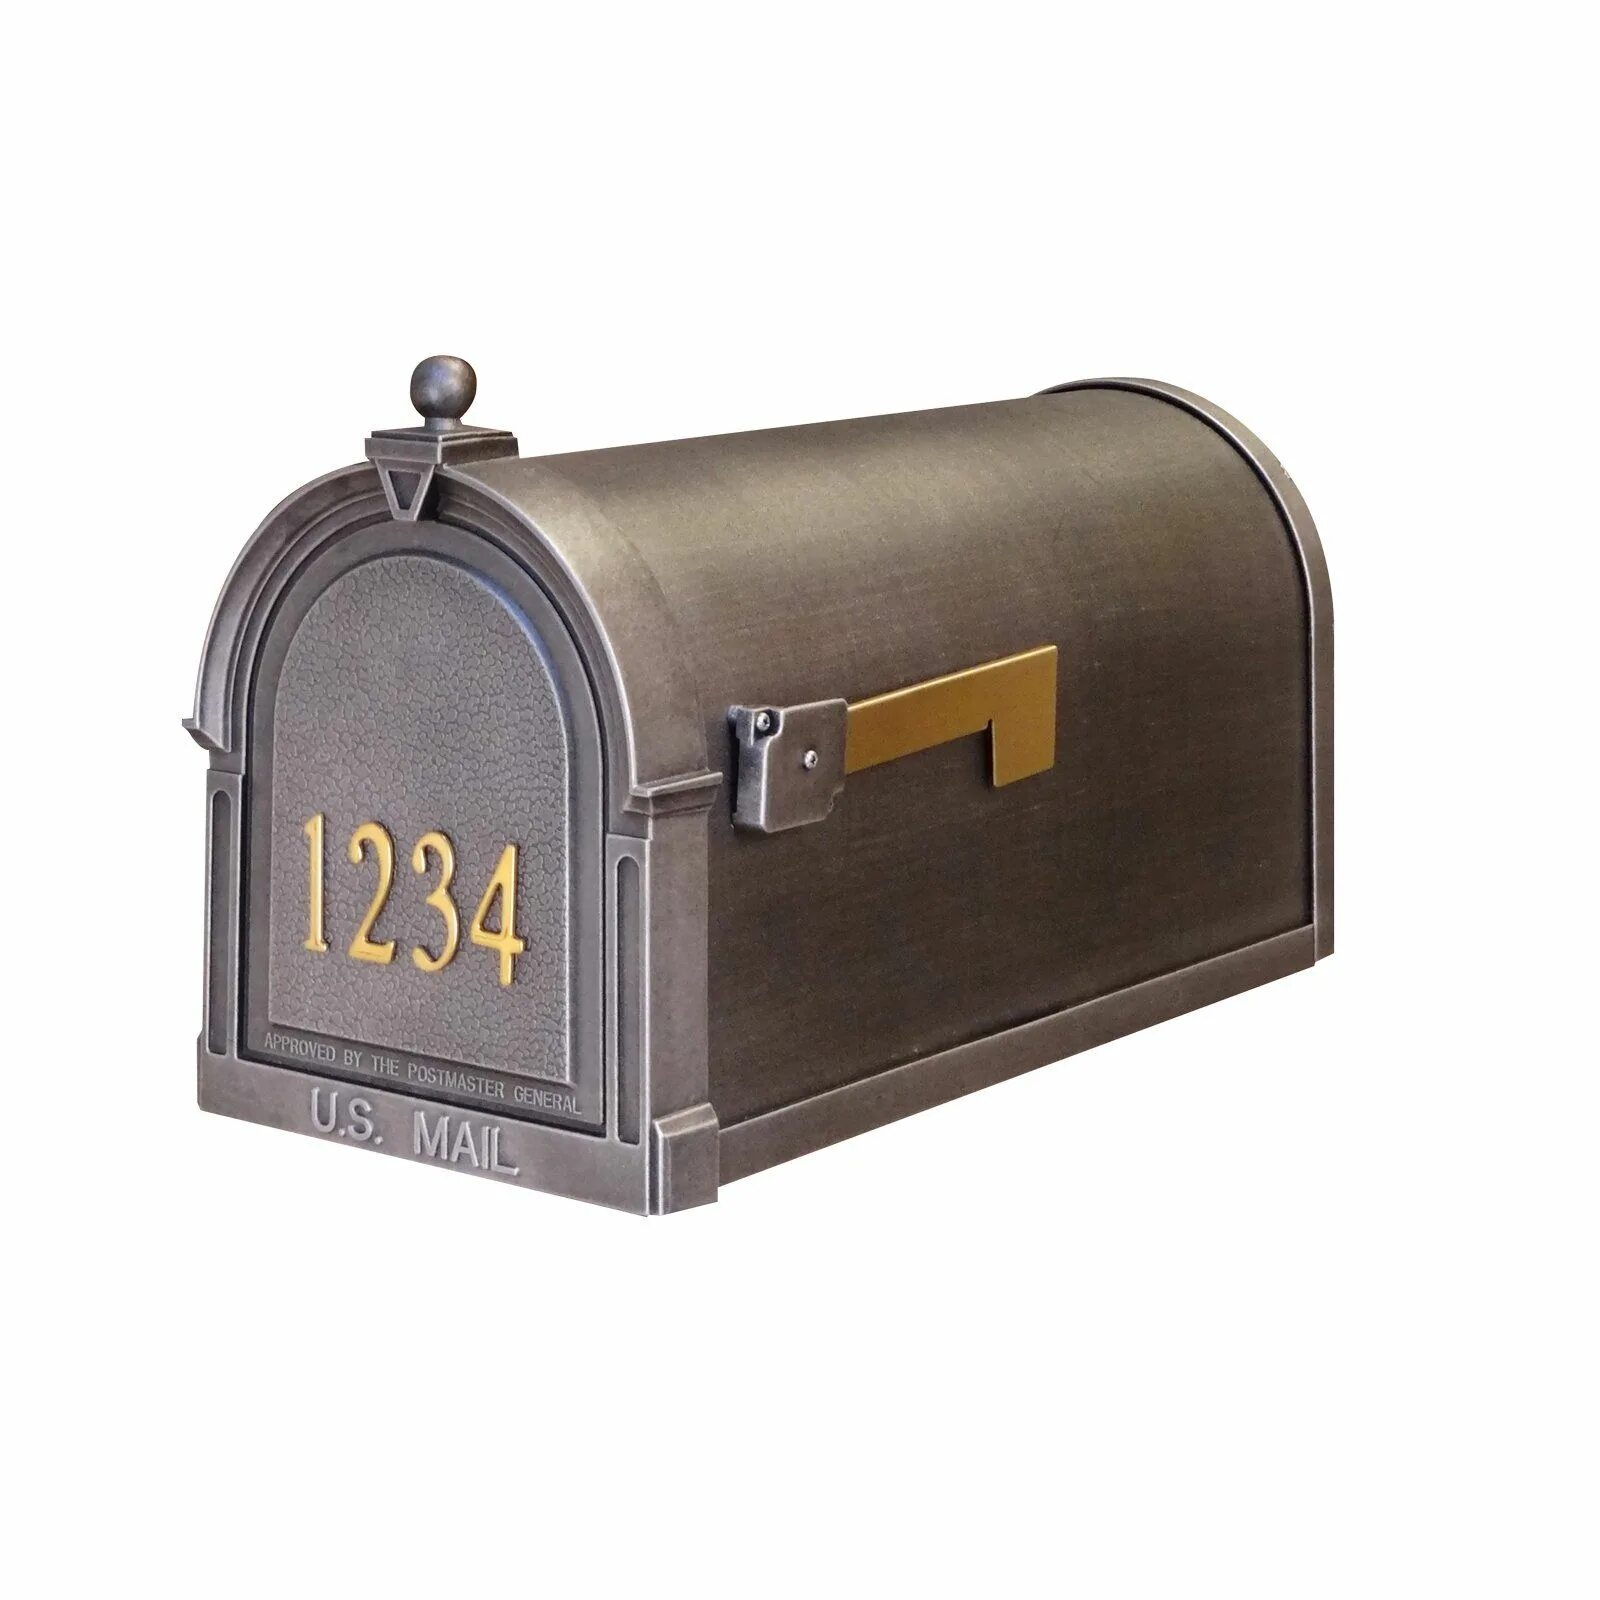 Почтовый ящик. Американский почтовый ящик. Почтовый ящик в американском стиле. Почтовый ящик американского типа. Mailbox hosting